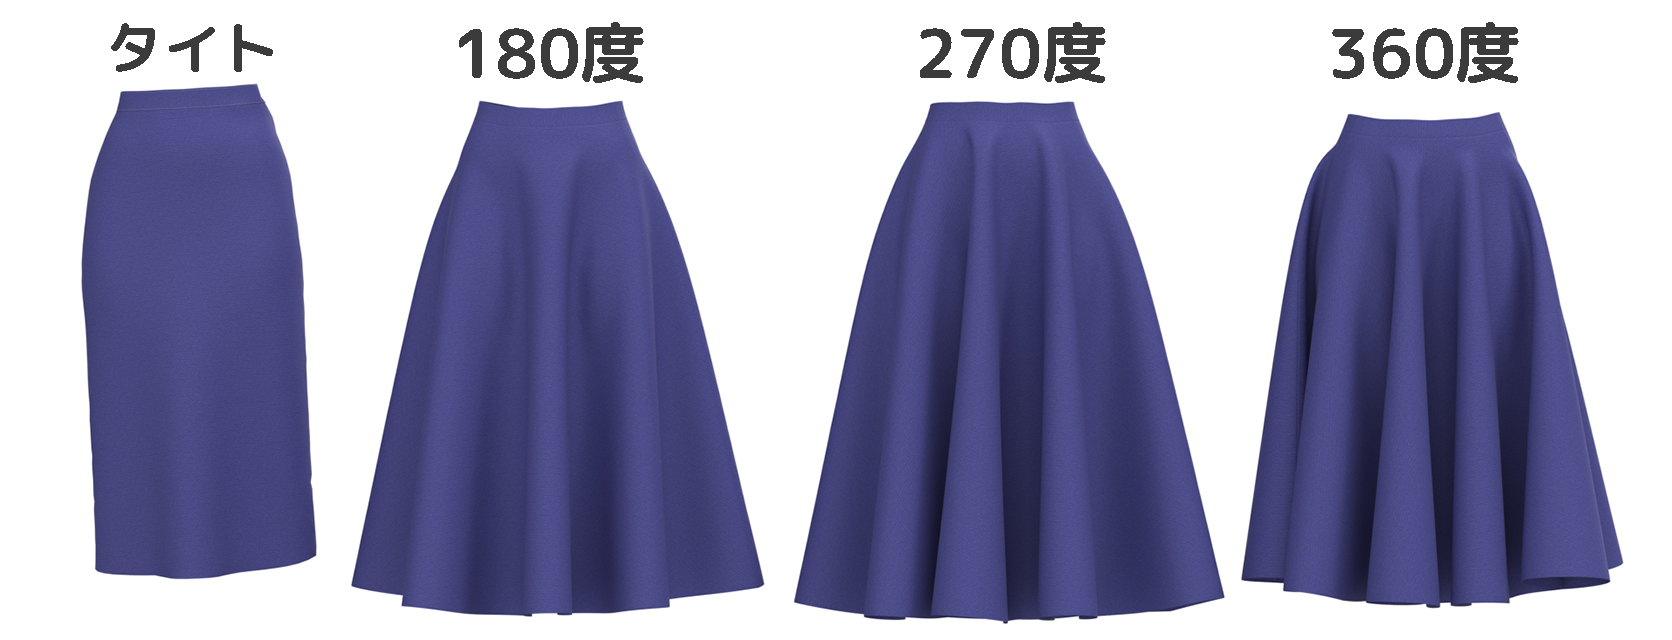 スカートのボリュームの比較